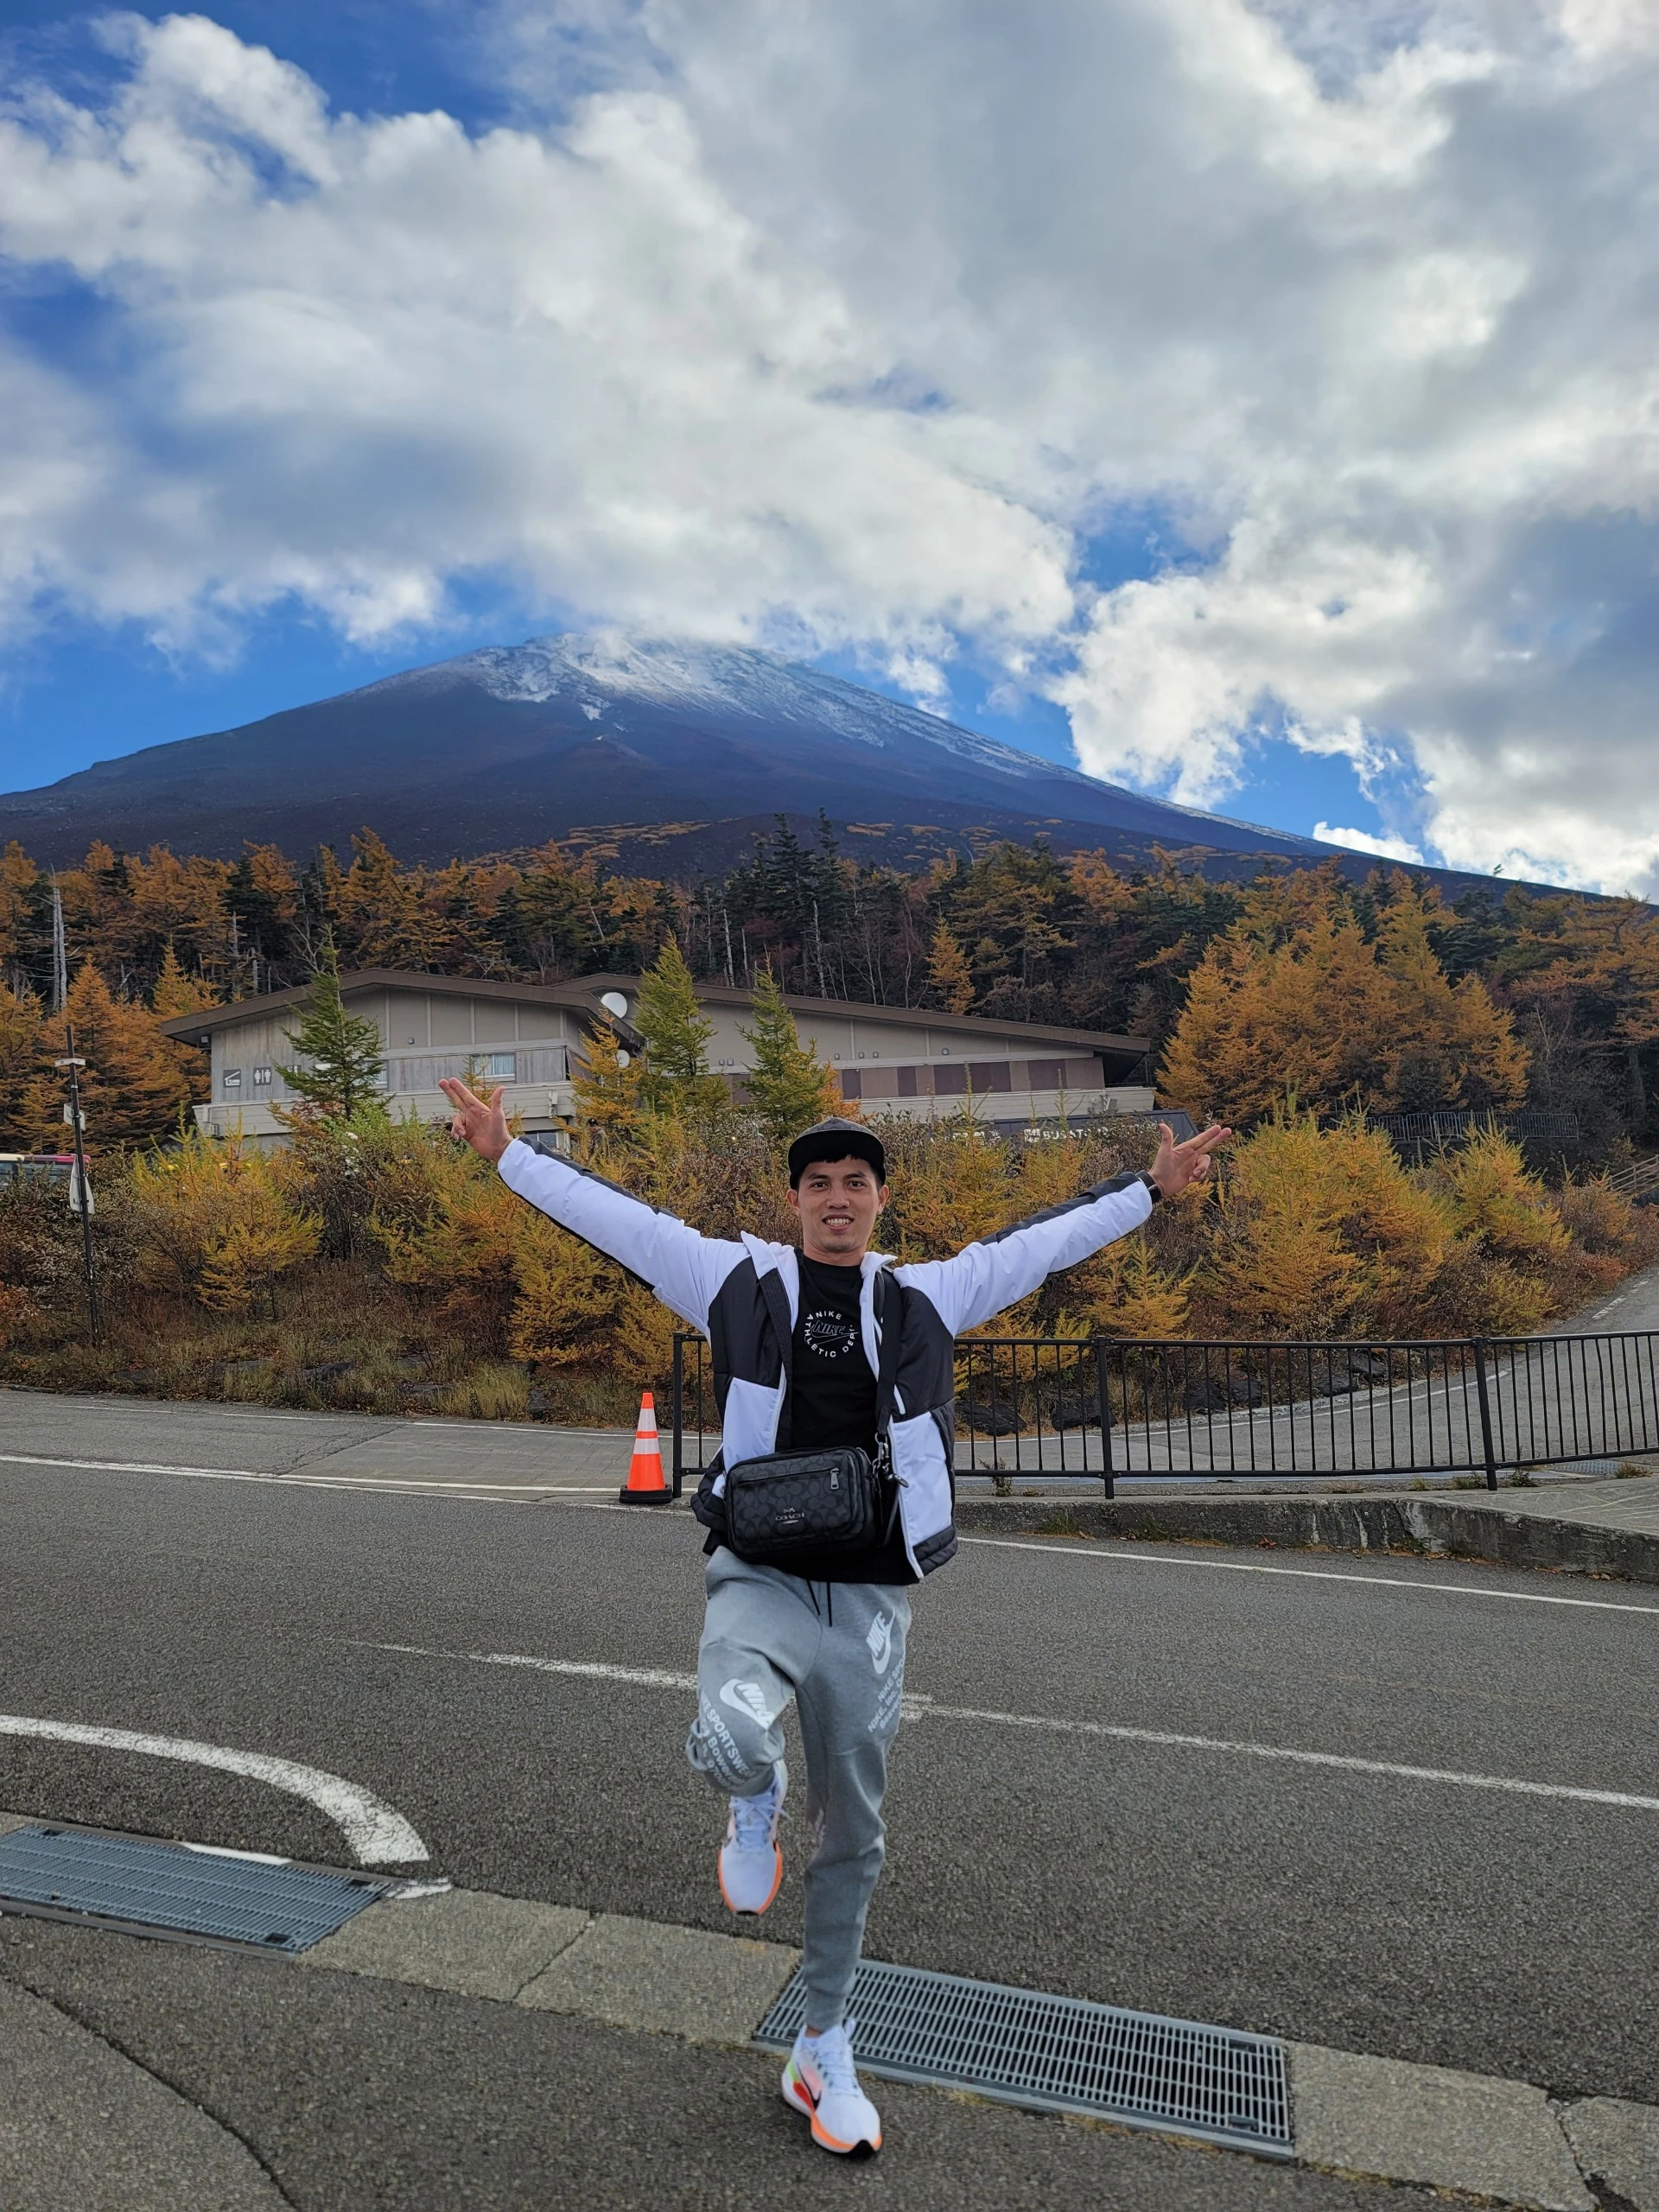 Chàng trai chinh phục núi Phú Sĩ, thỏa mãn ước mơ ngắm thiên nhiên kỳ vĩ - Ảnh 4.